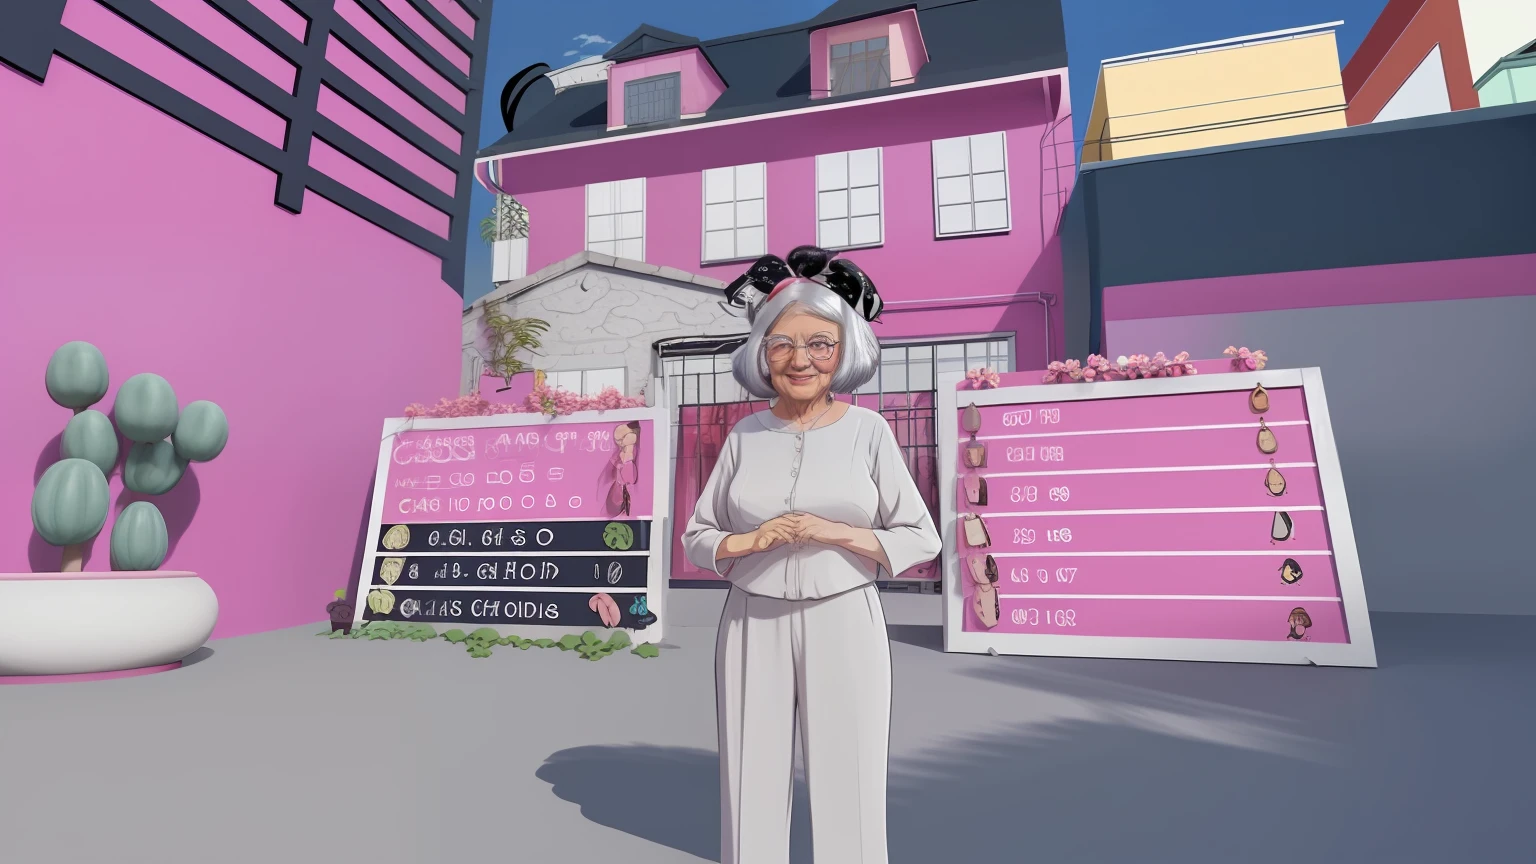 Oma mit Bob im Haar, rosa Haus im Hintergrund, Cartoon-Stil, Anime-Stil